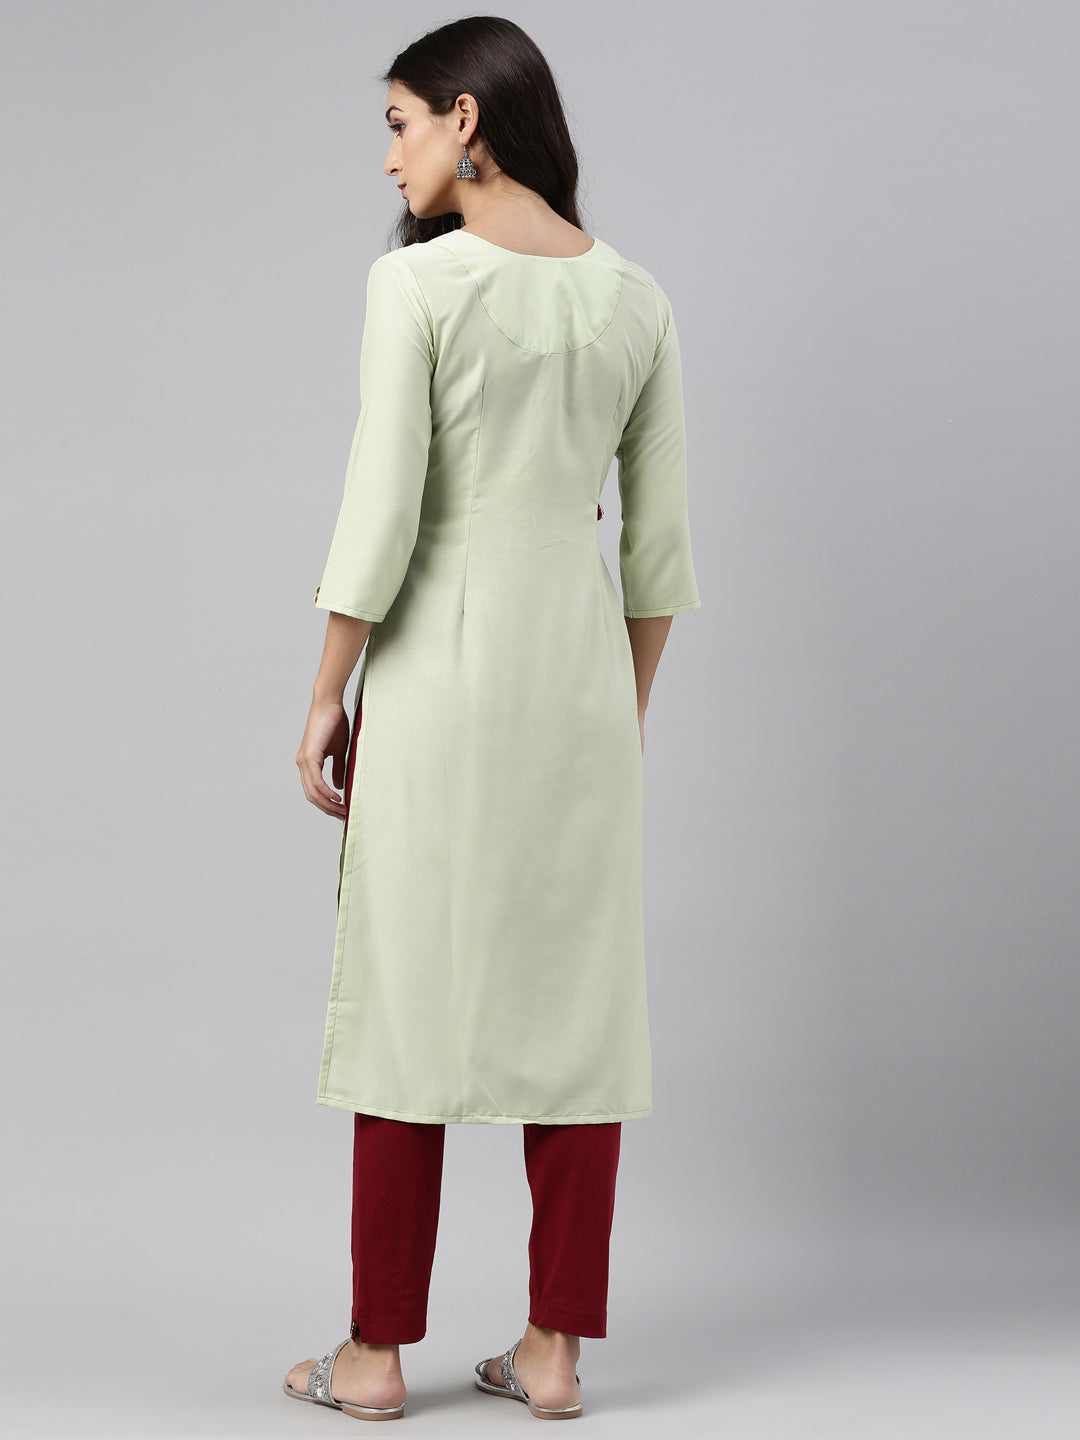 Neeru'S Pista Color, Muslin Fabric Tunic